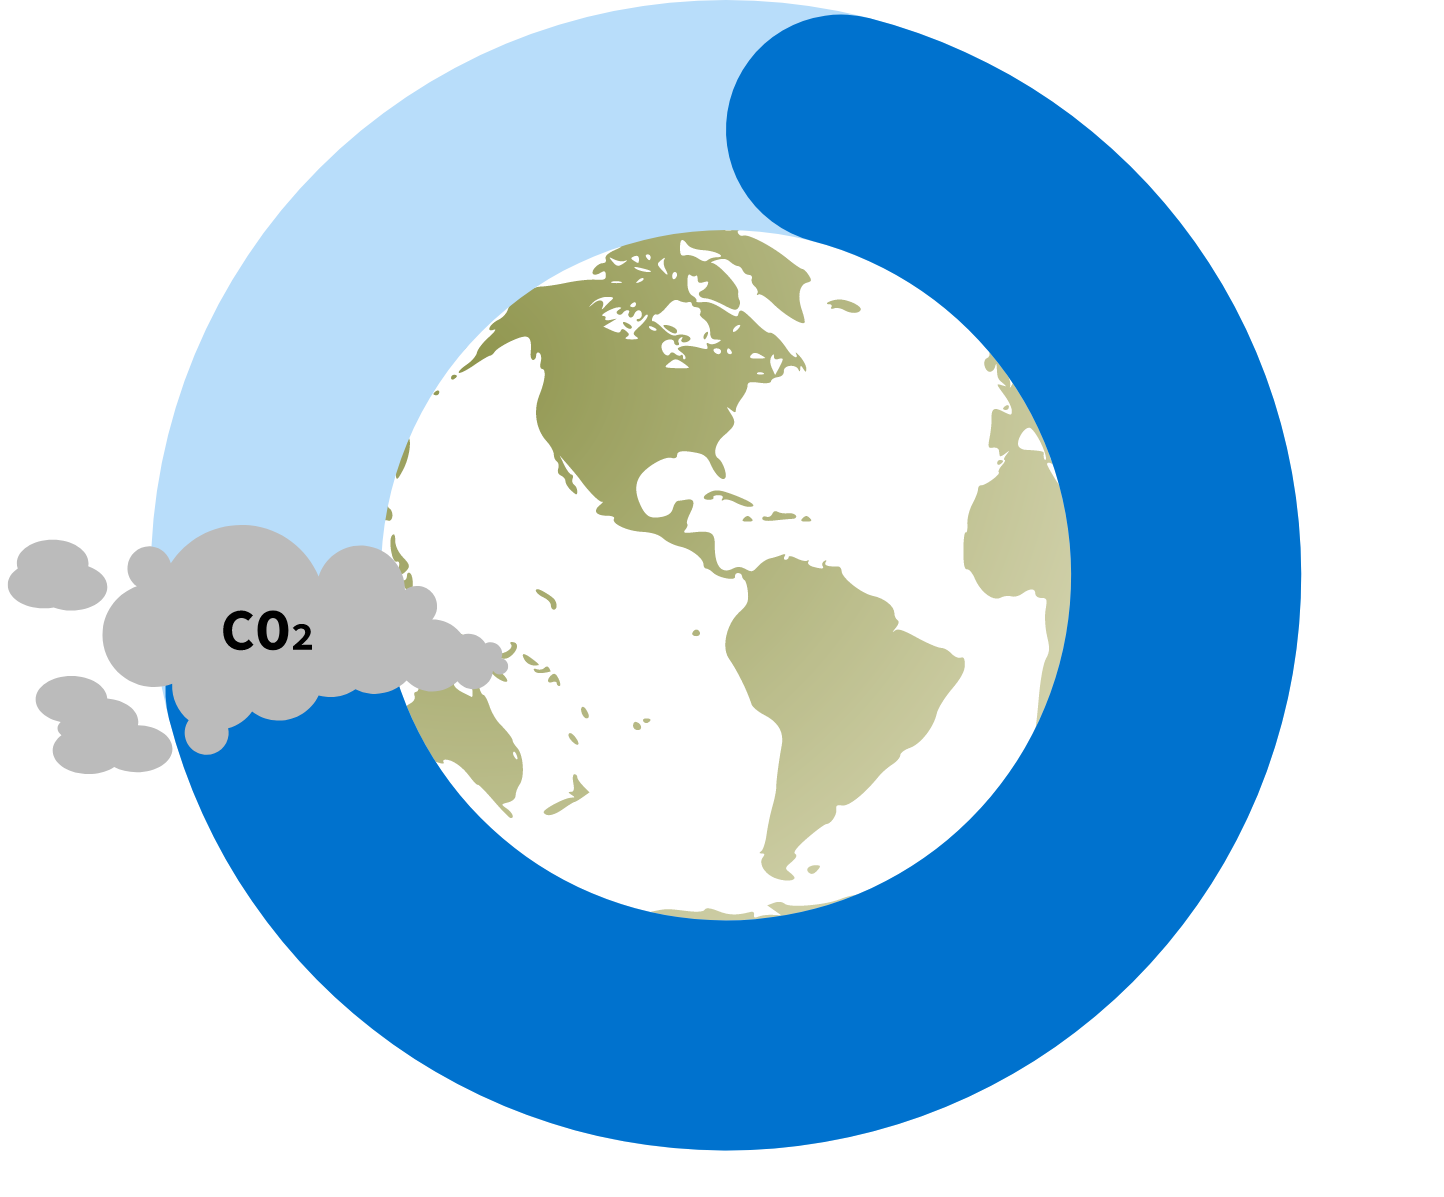 Kina har 7,60 tonn CO2-utslipp per innbygger.